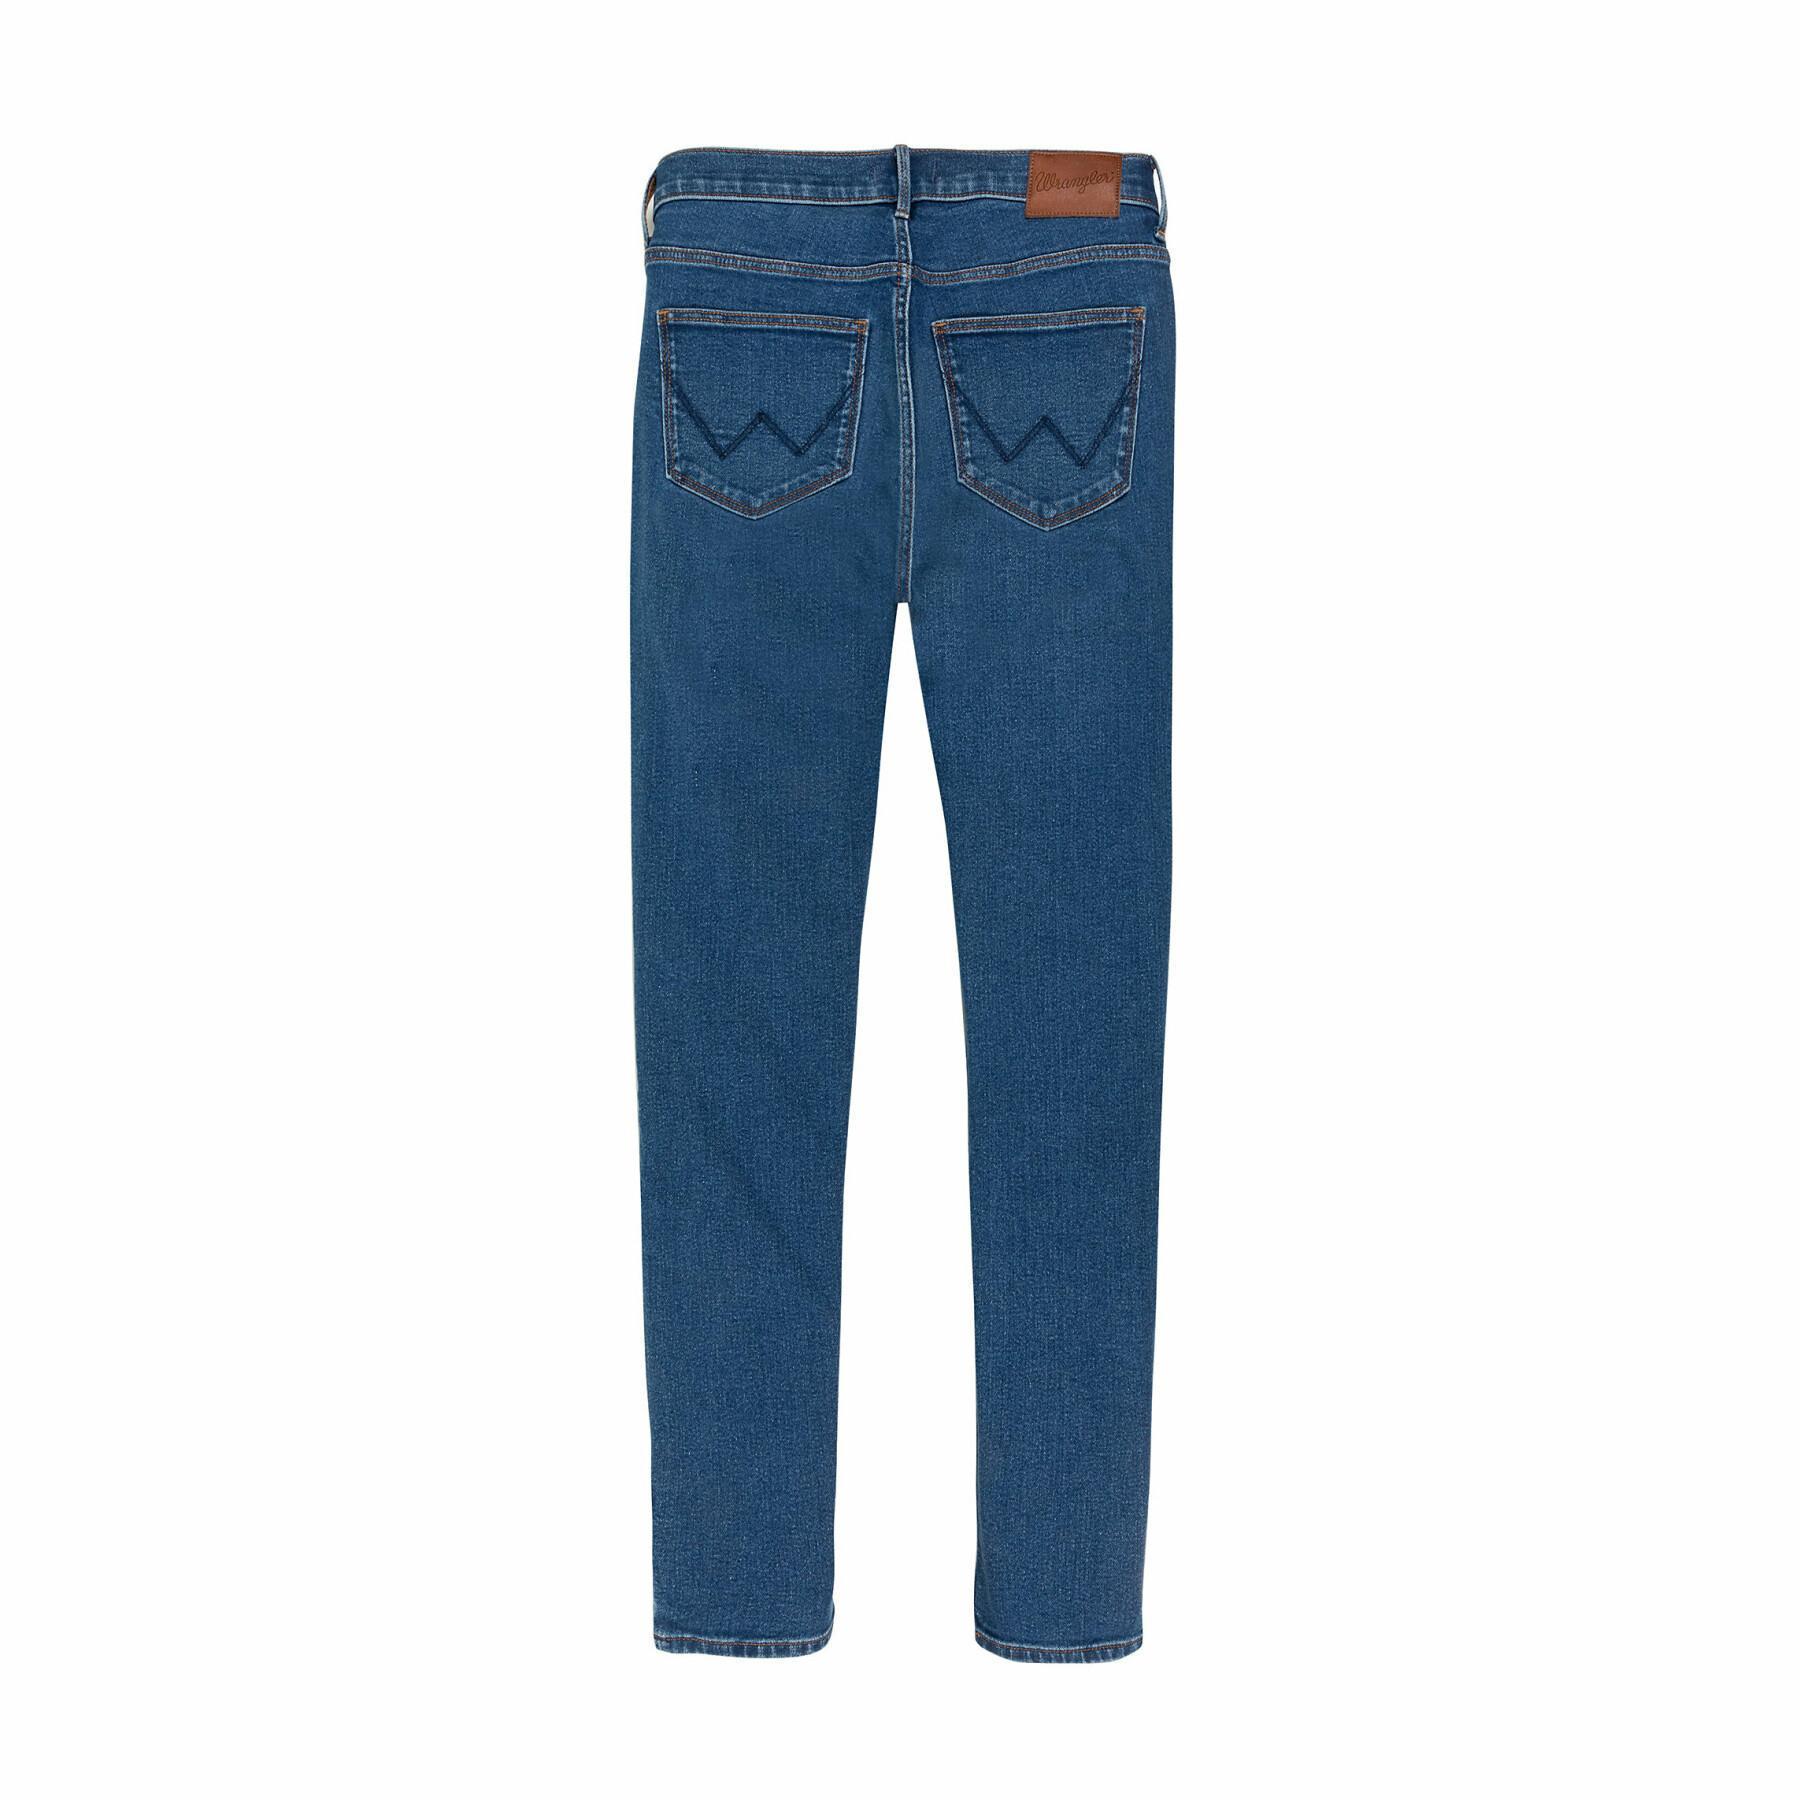 Women's skinny jeans Wrangler in Camellia